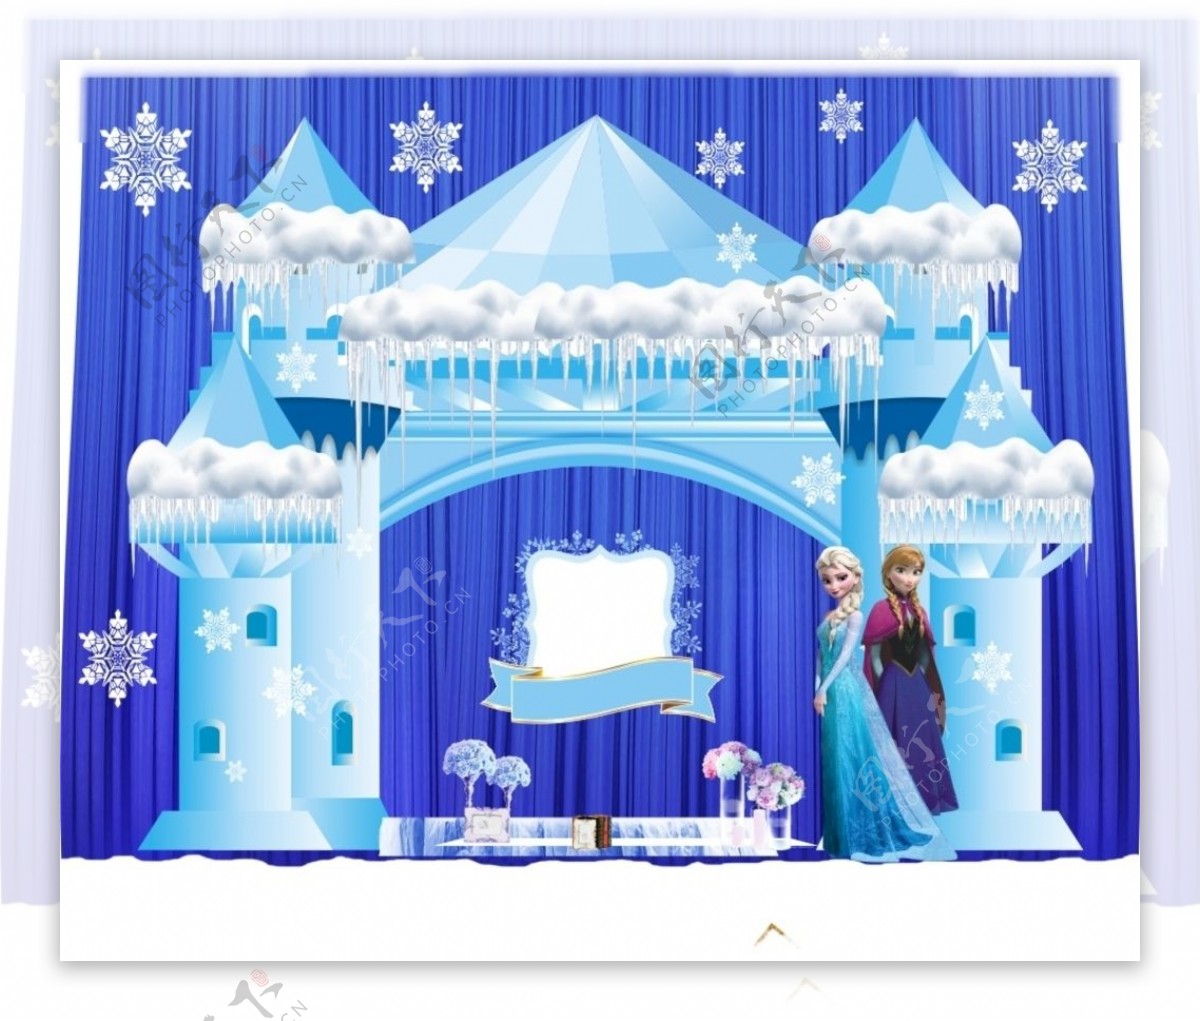 蓝色城堡冰雪拱门